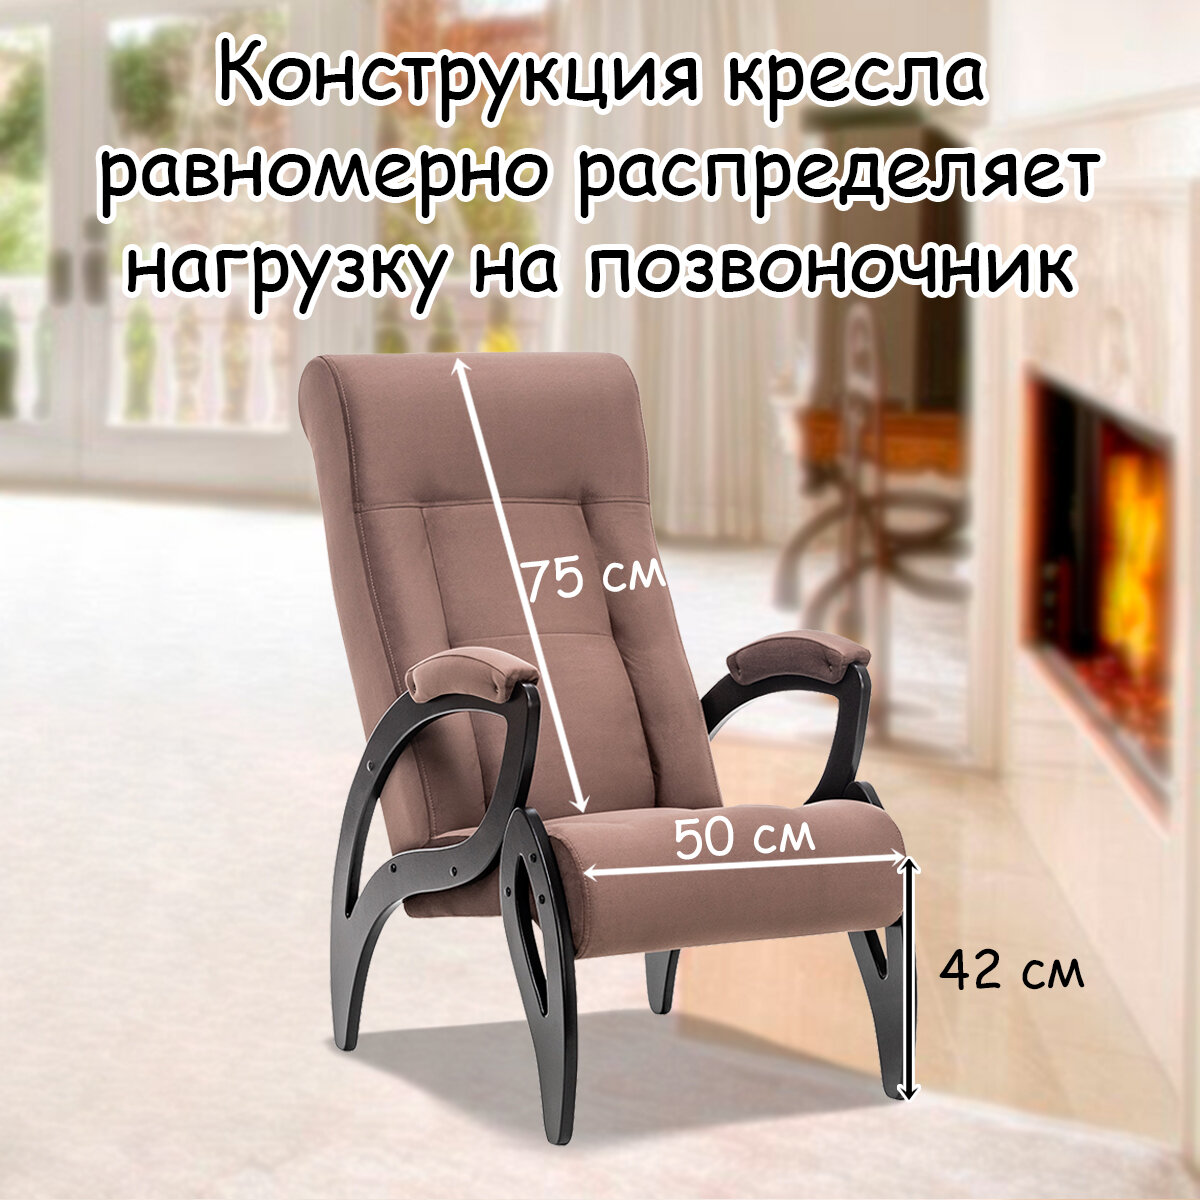 Кресло для взрослых 58.5х87х99 см, модель 51, maxx, цвет: Maxx 235 (коричневый), каркас: Venge (черный) - фотография № 2